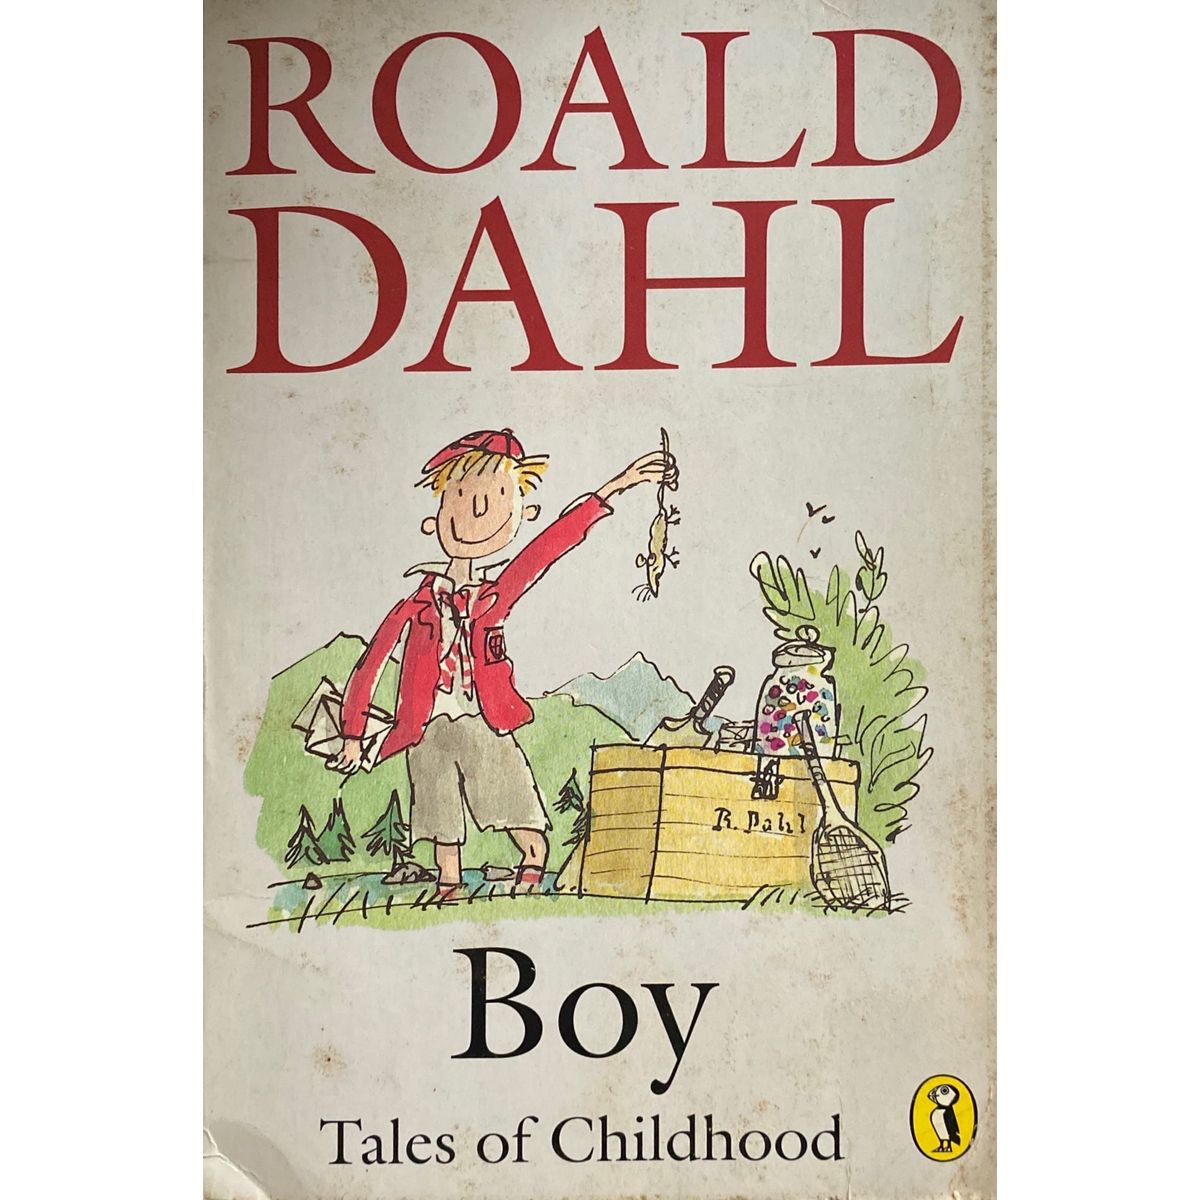 ISBN: 9780140318906 / 0140318909 - Boy: Tales of Childhood by Roald Dahl [1986]